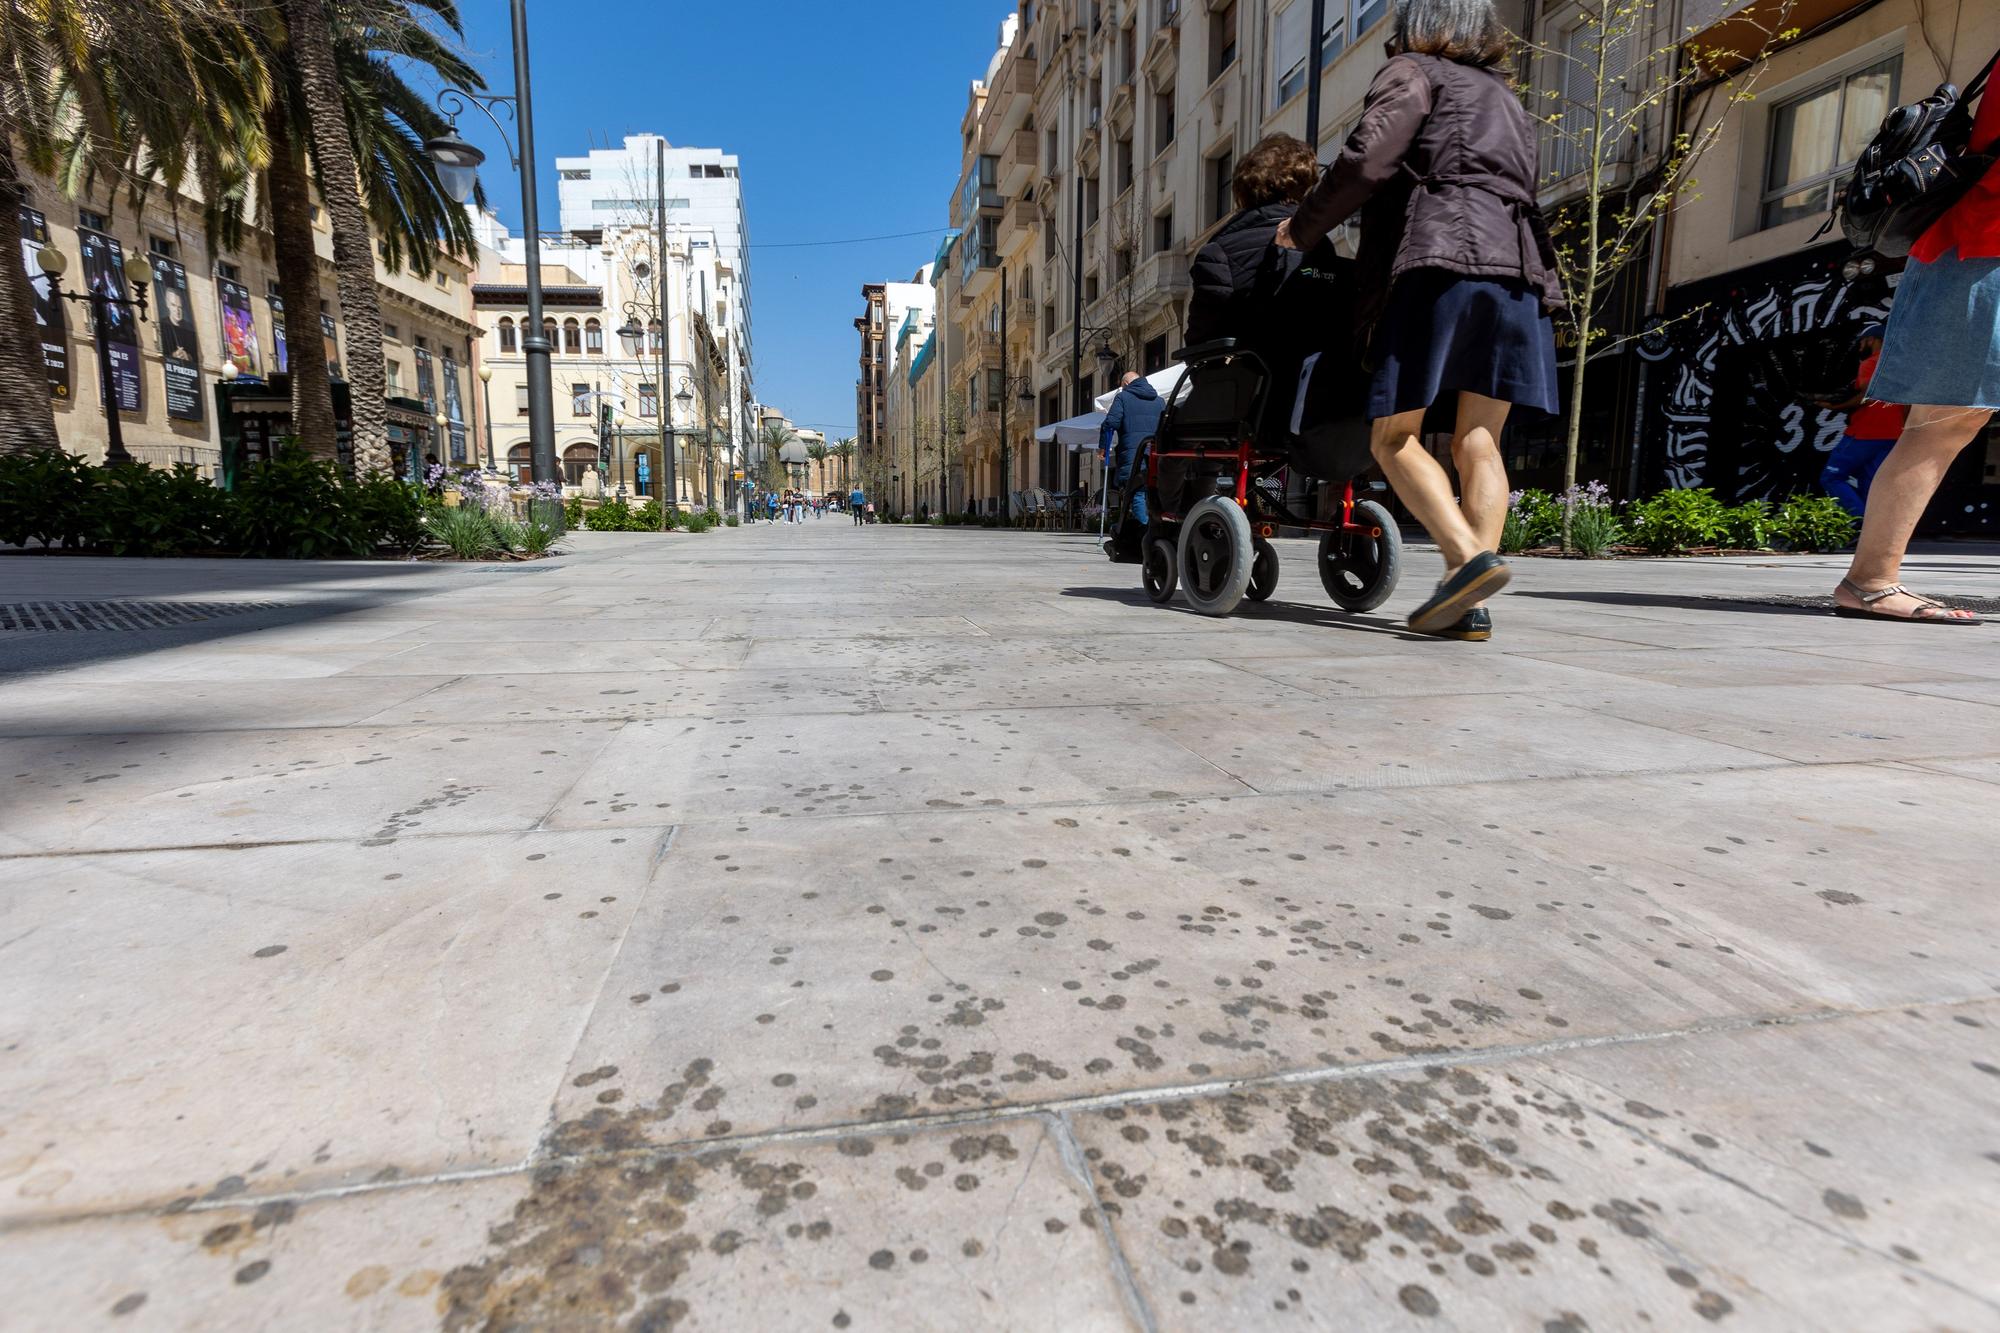 Suma y sigue: la cera "decora" la avenida de la Constitución en Alicante